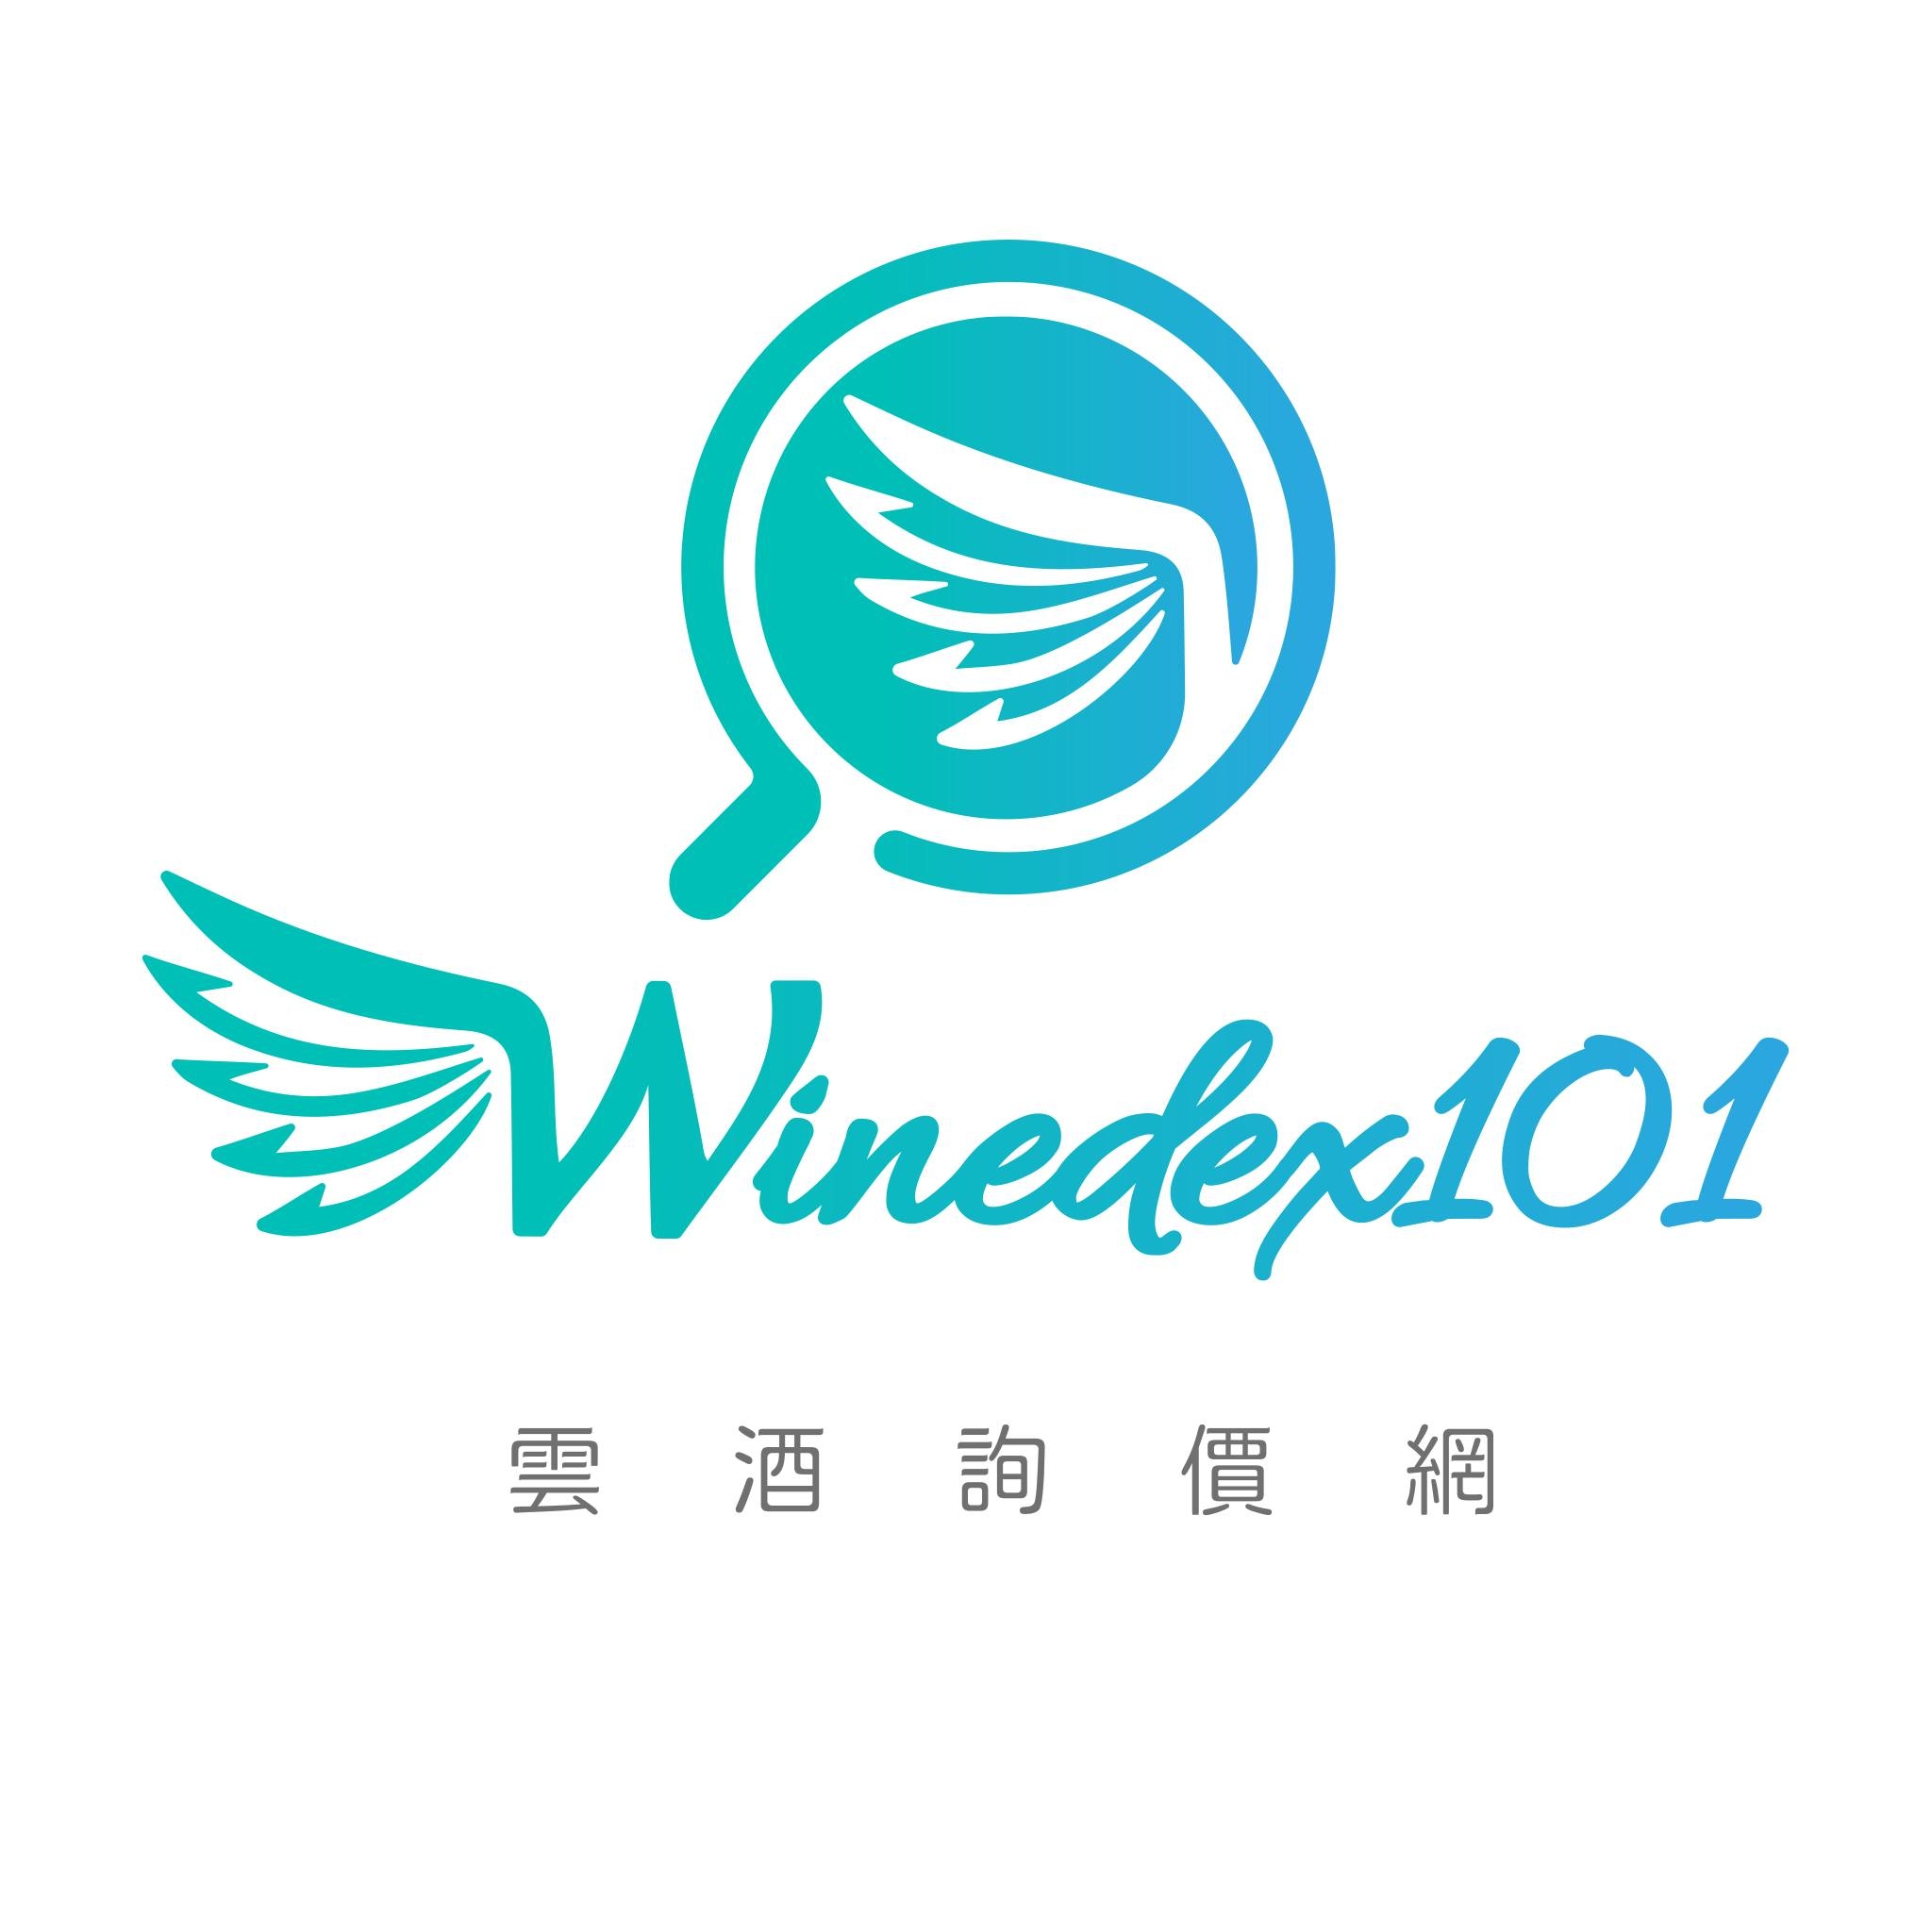 Winedex101雲酒詢價網 FB粉絲